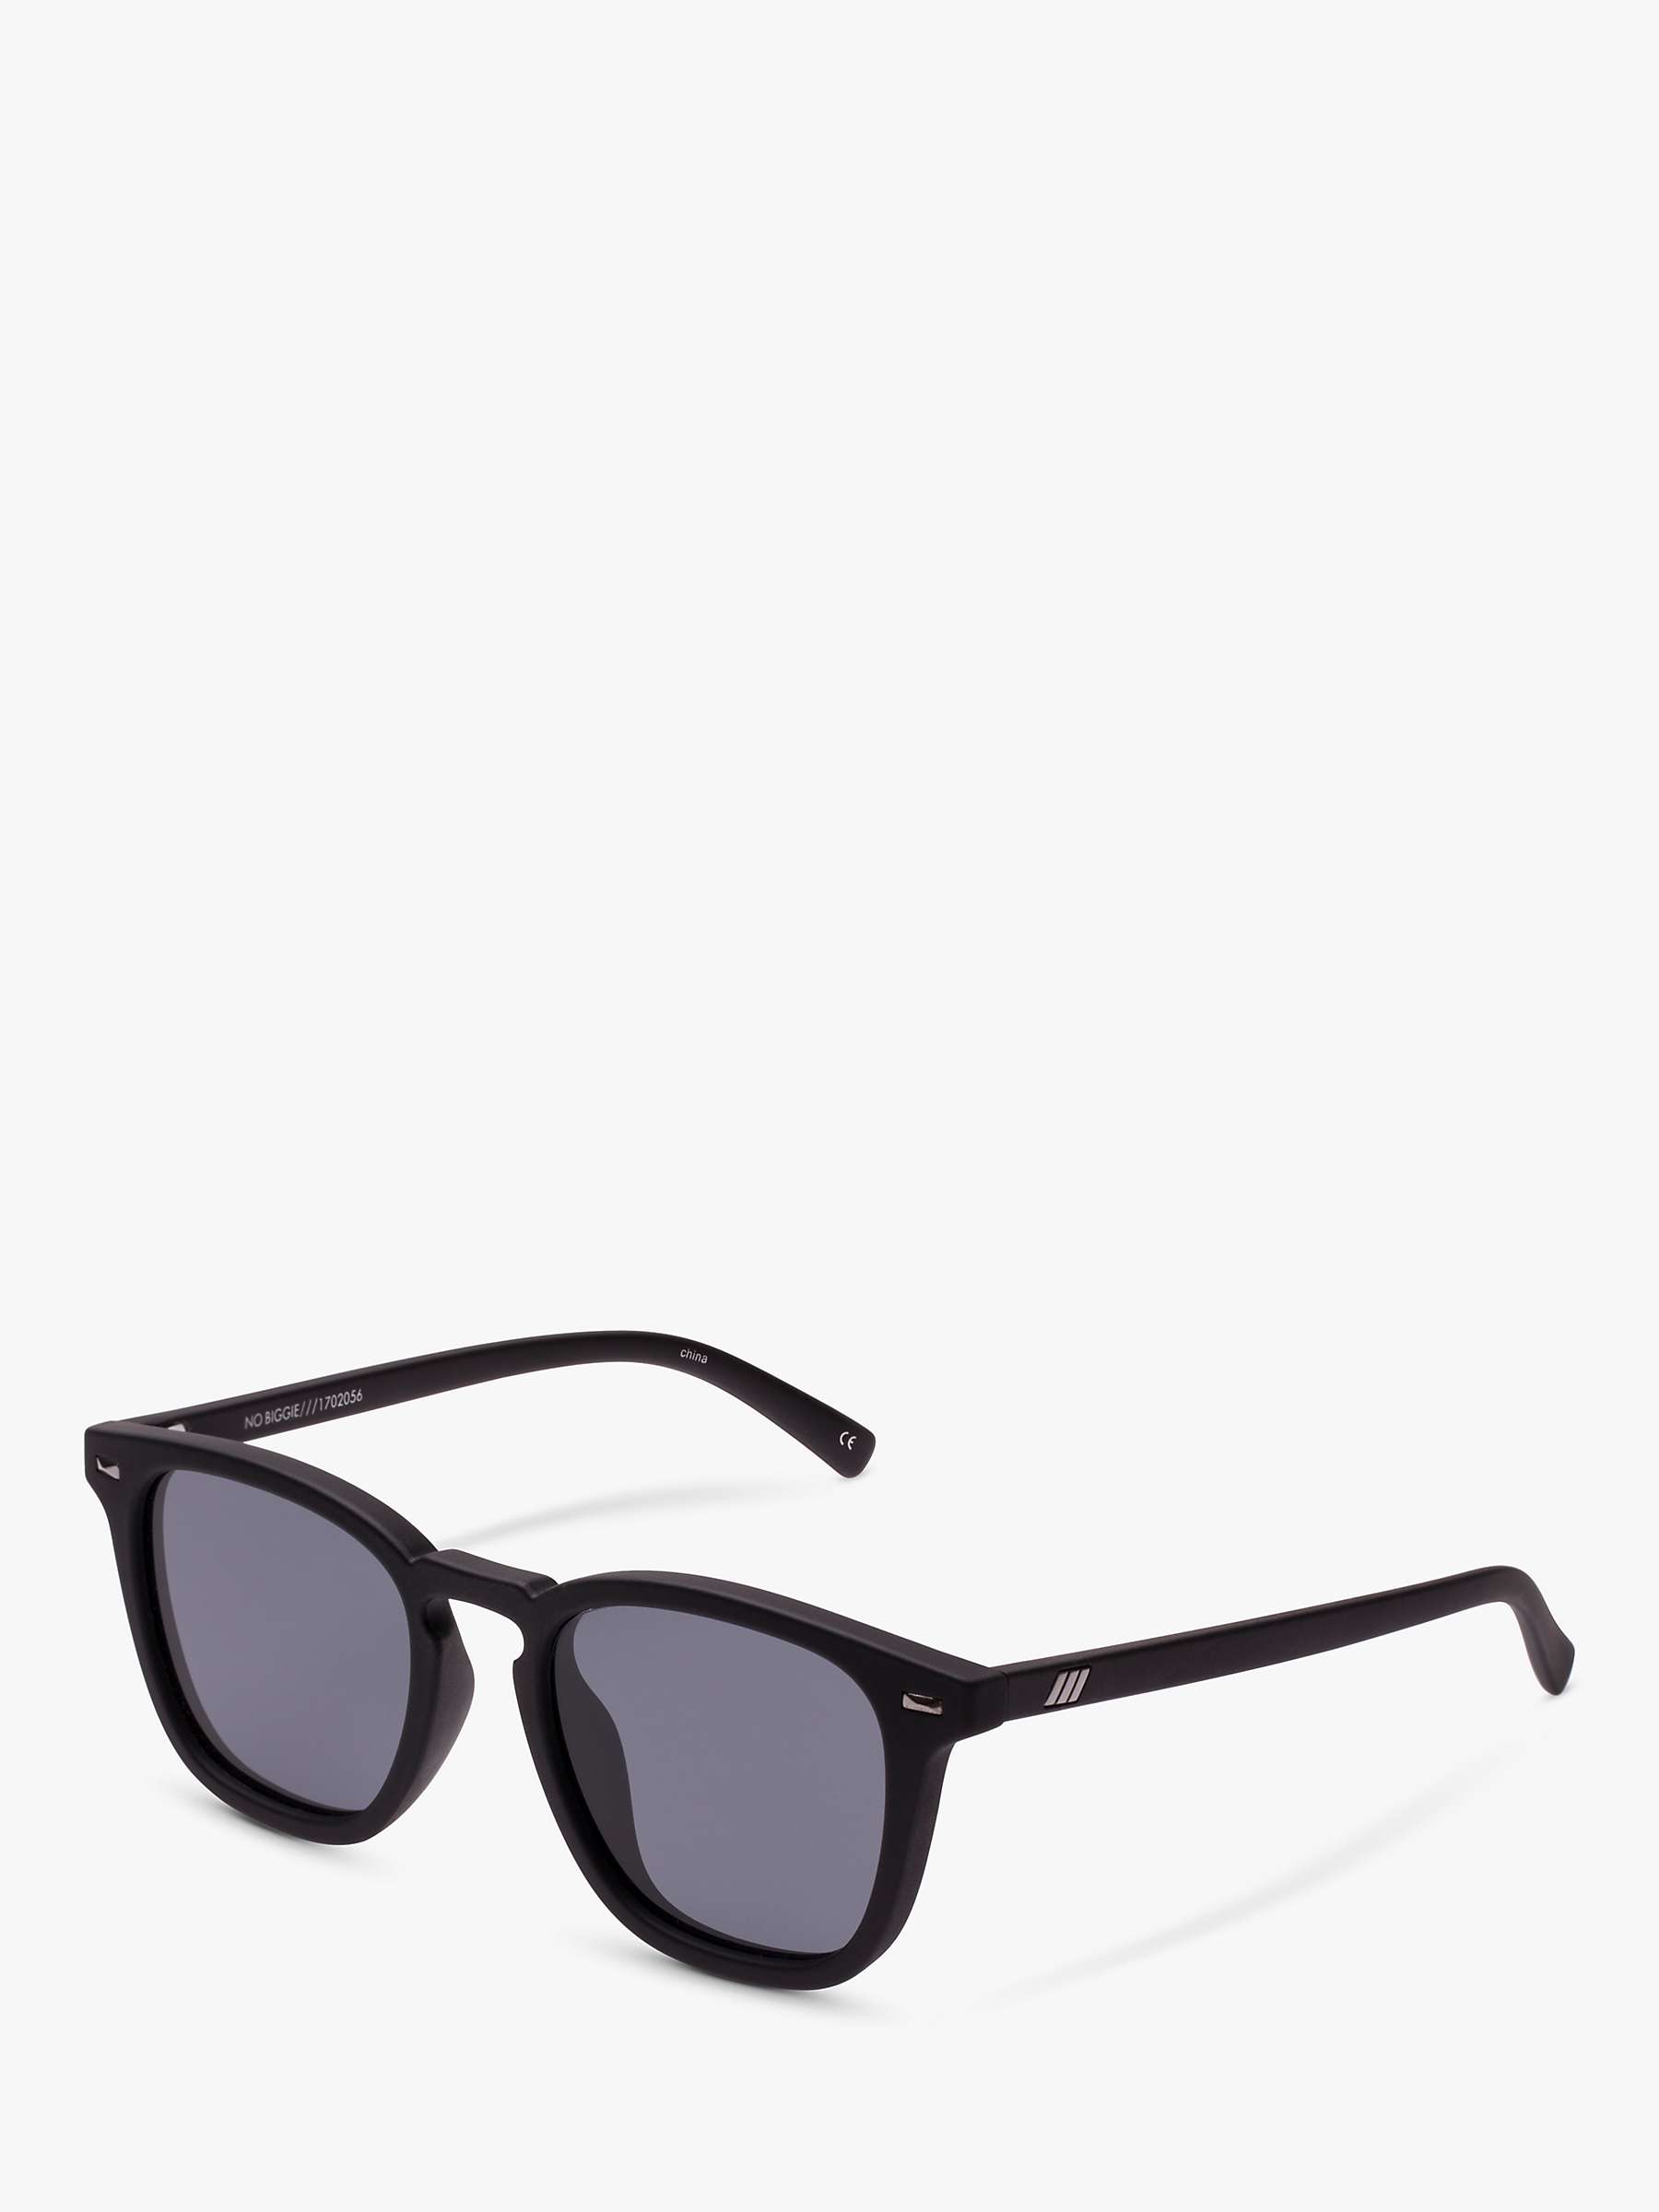 Buy Le Specs Unisex No Biggie Polarised D-Frame Sunglasses Online at johnlewis.com